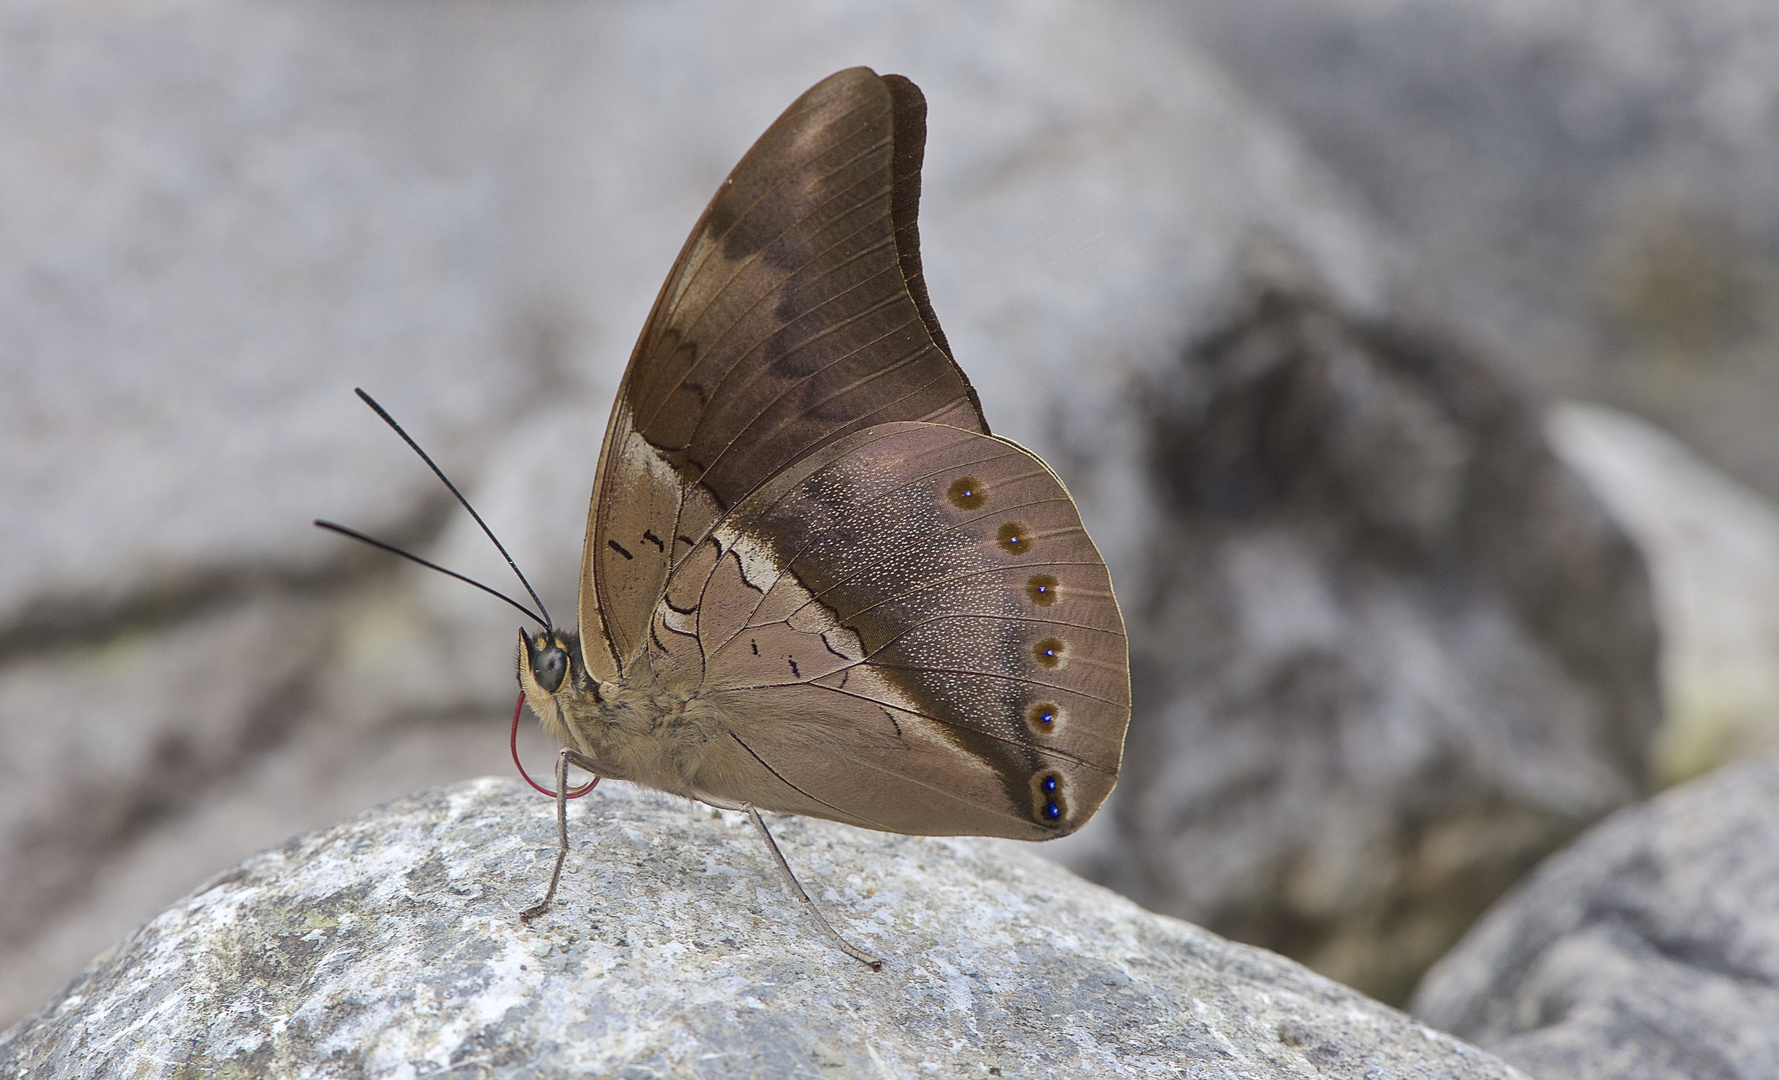 Nymphalidae sp. aus dem Bergregenwald von Peru